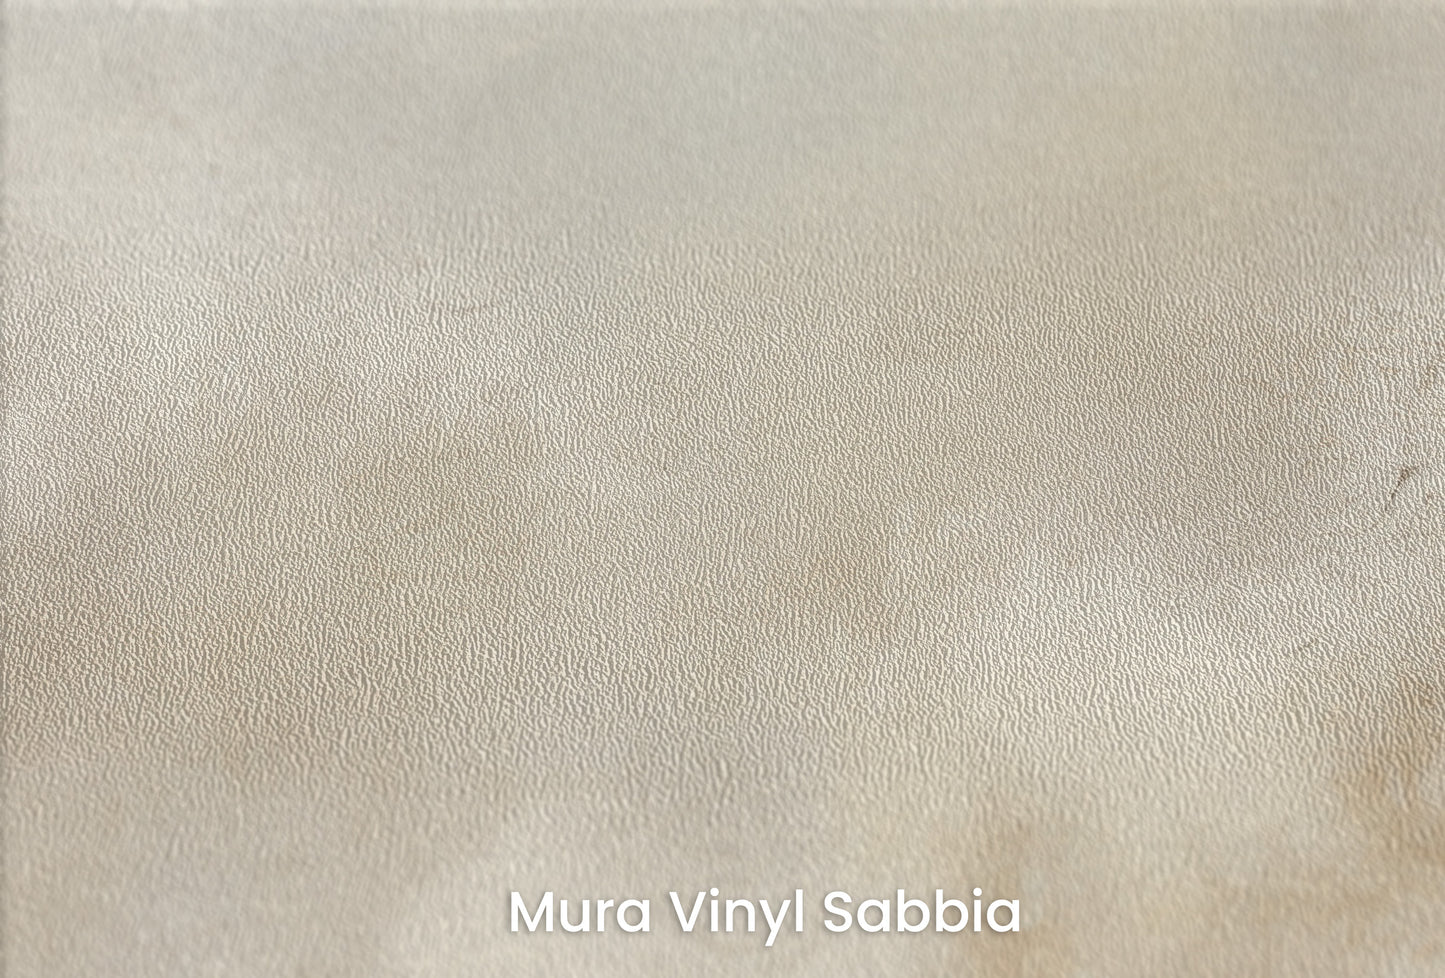 Zbliżenie na artystyczną fototapetę o nazwie AMBER DAWN na podłożu Mura Vinyl Sabbia struktura grubego ziarna piasku.